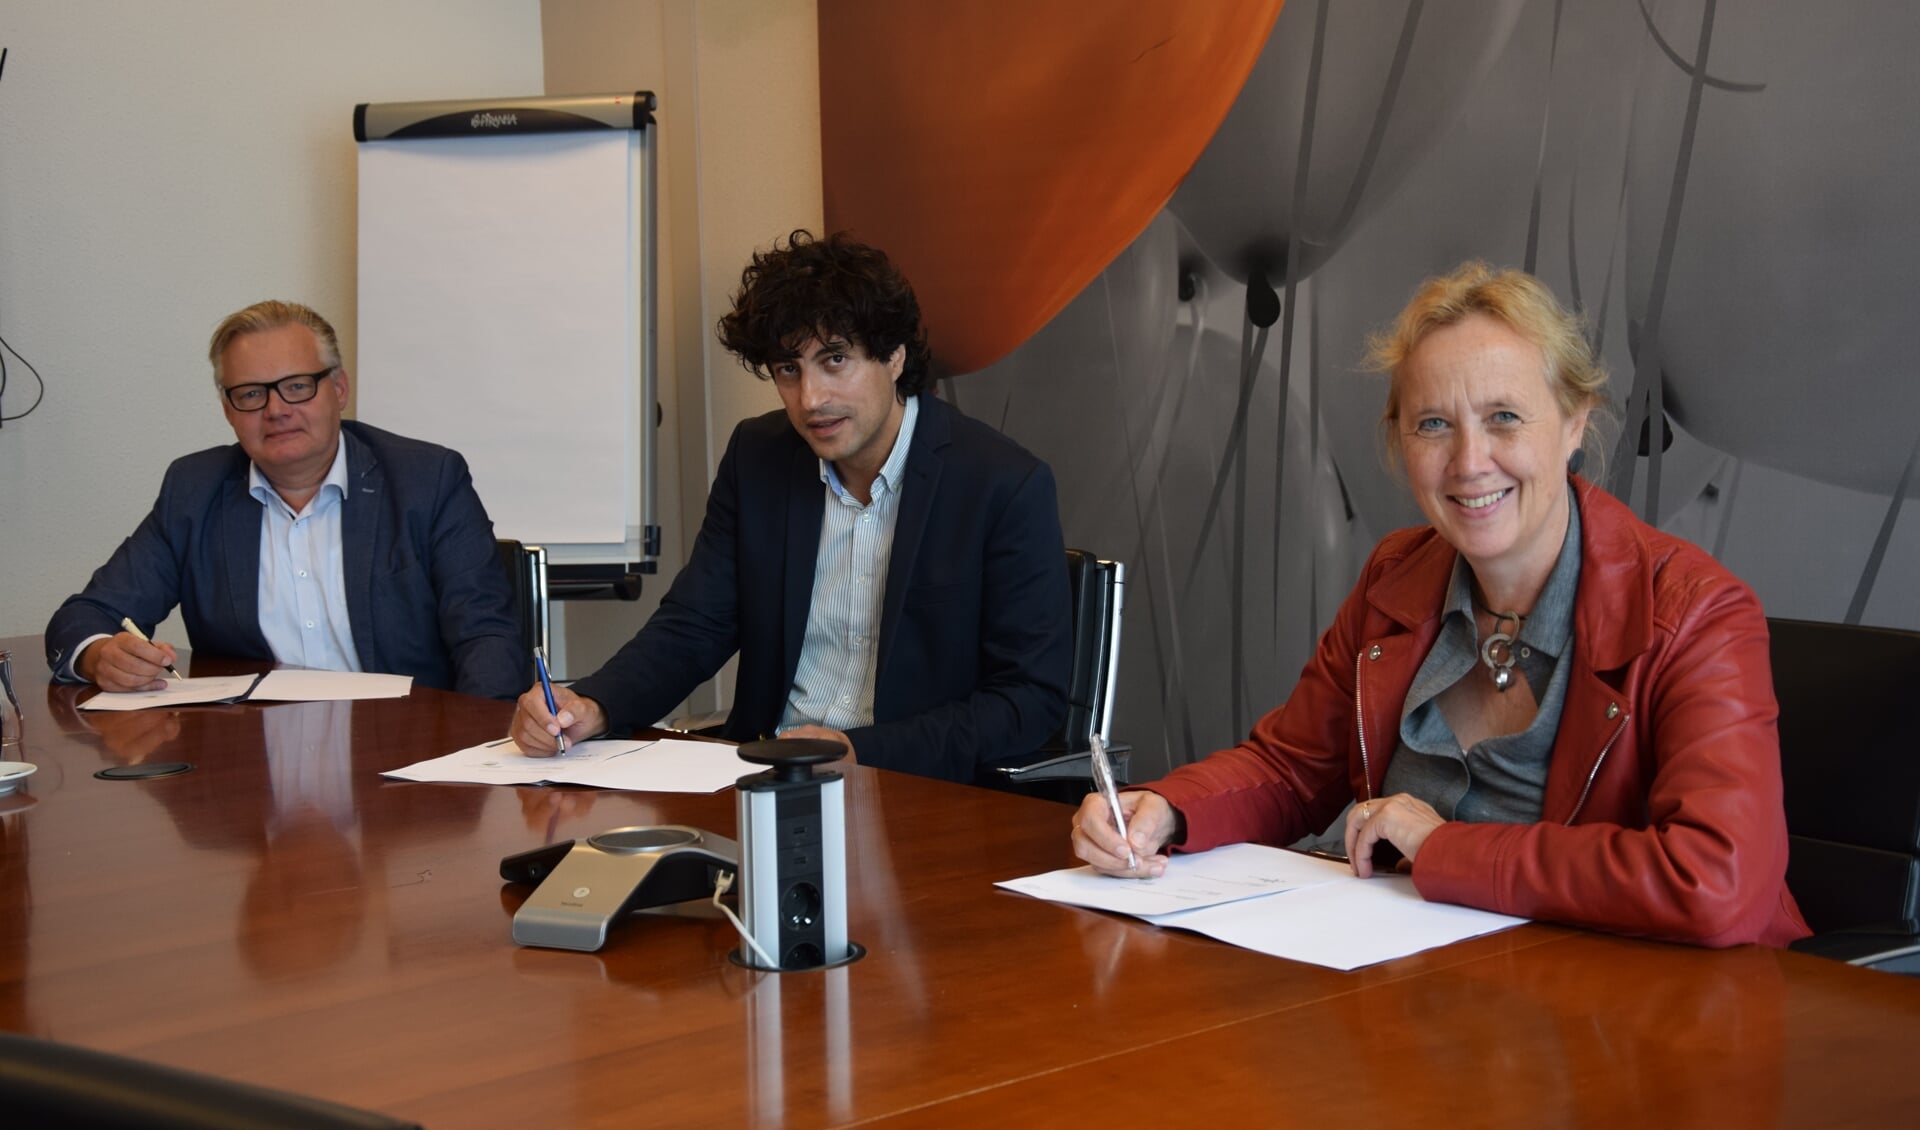 V.l.n.r.: Jan van Laake (directeur van het CIV Smart Technology, Johan de Haas (secretaris van OPBR) en wethouder Inge NIeuwenhuizen.